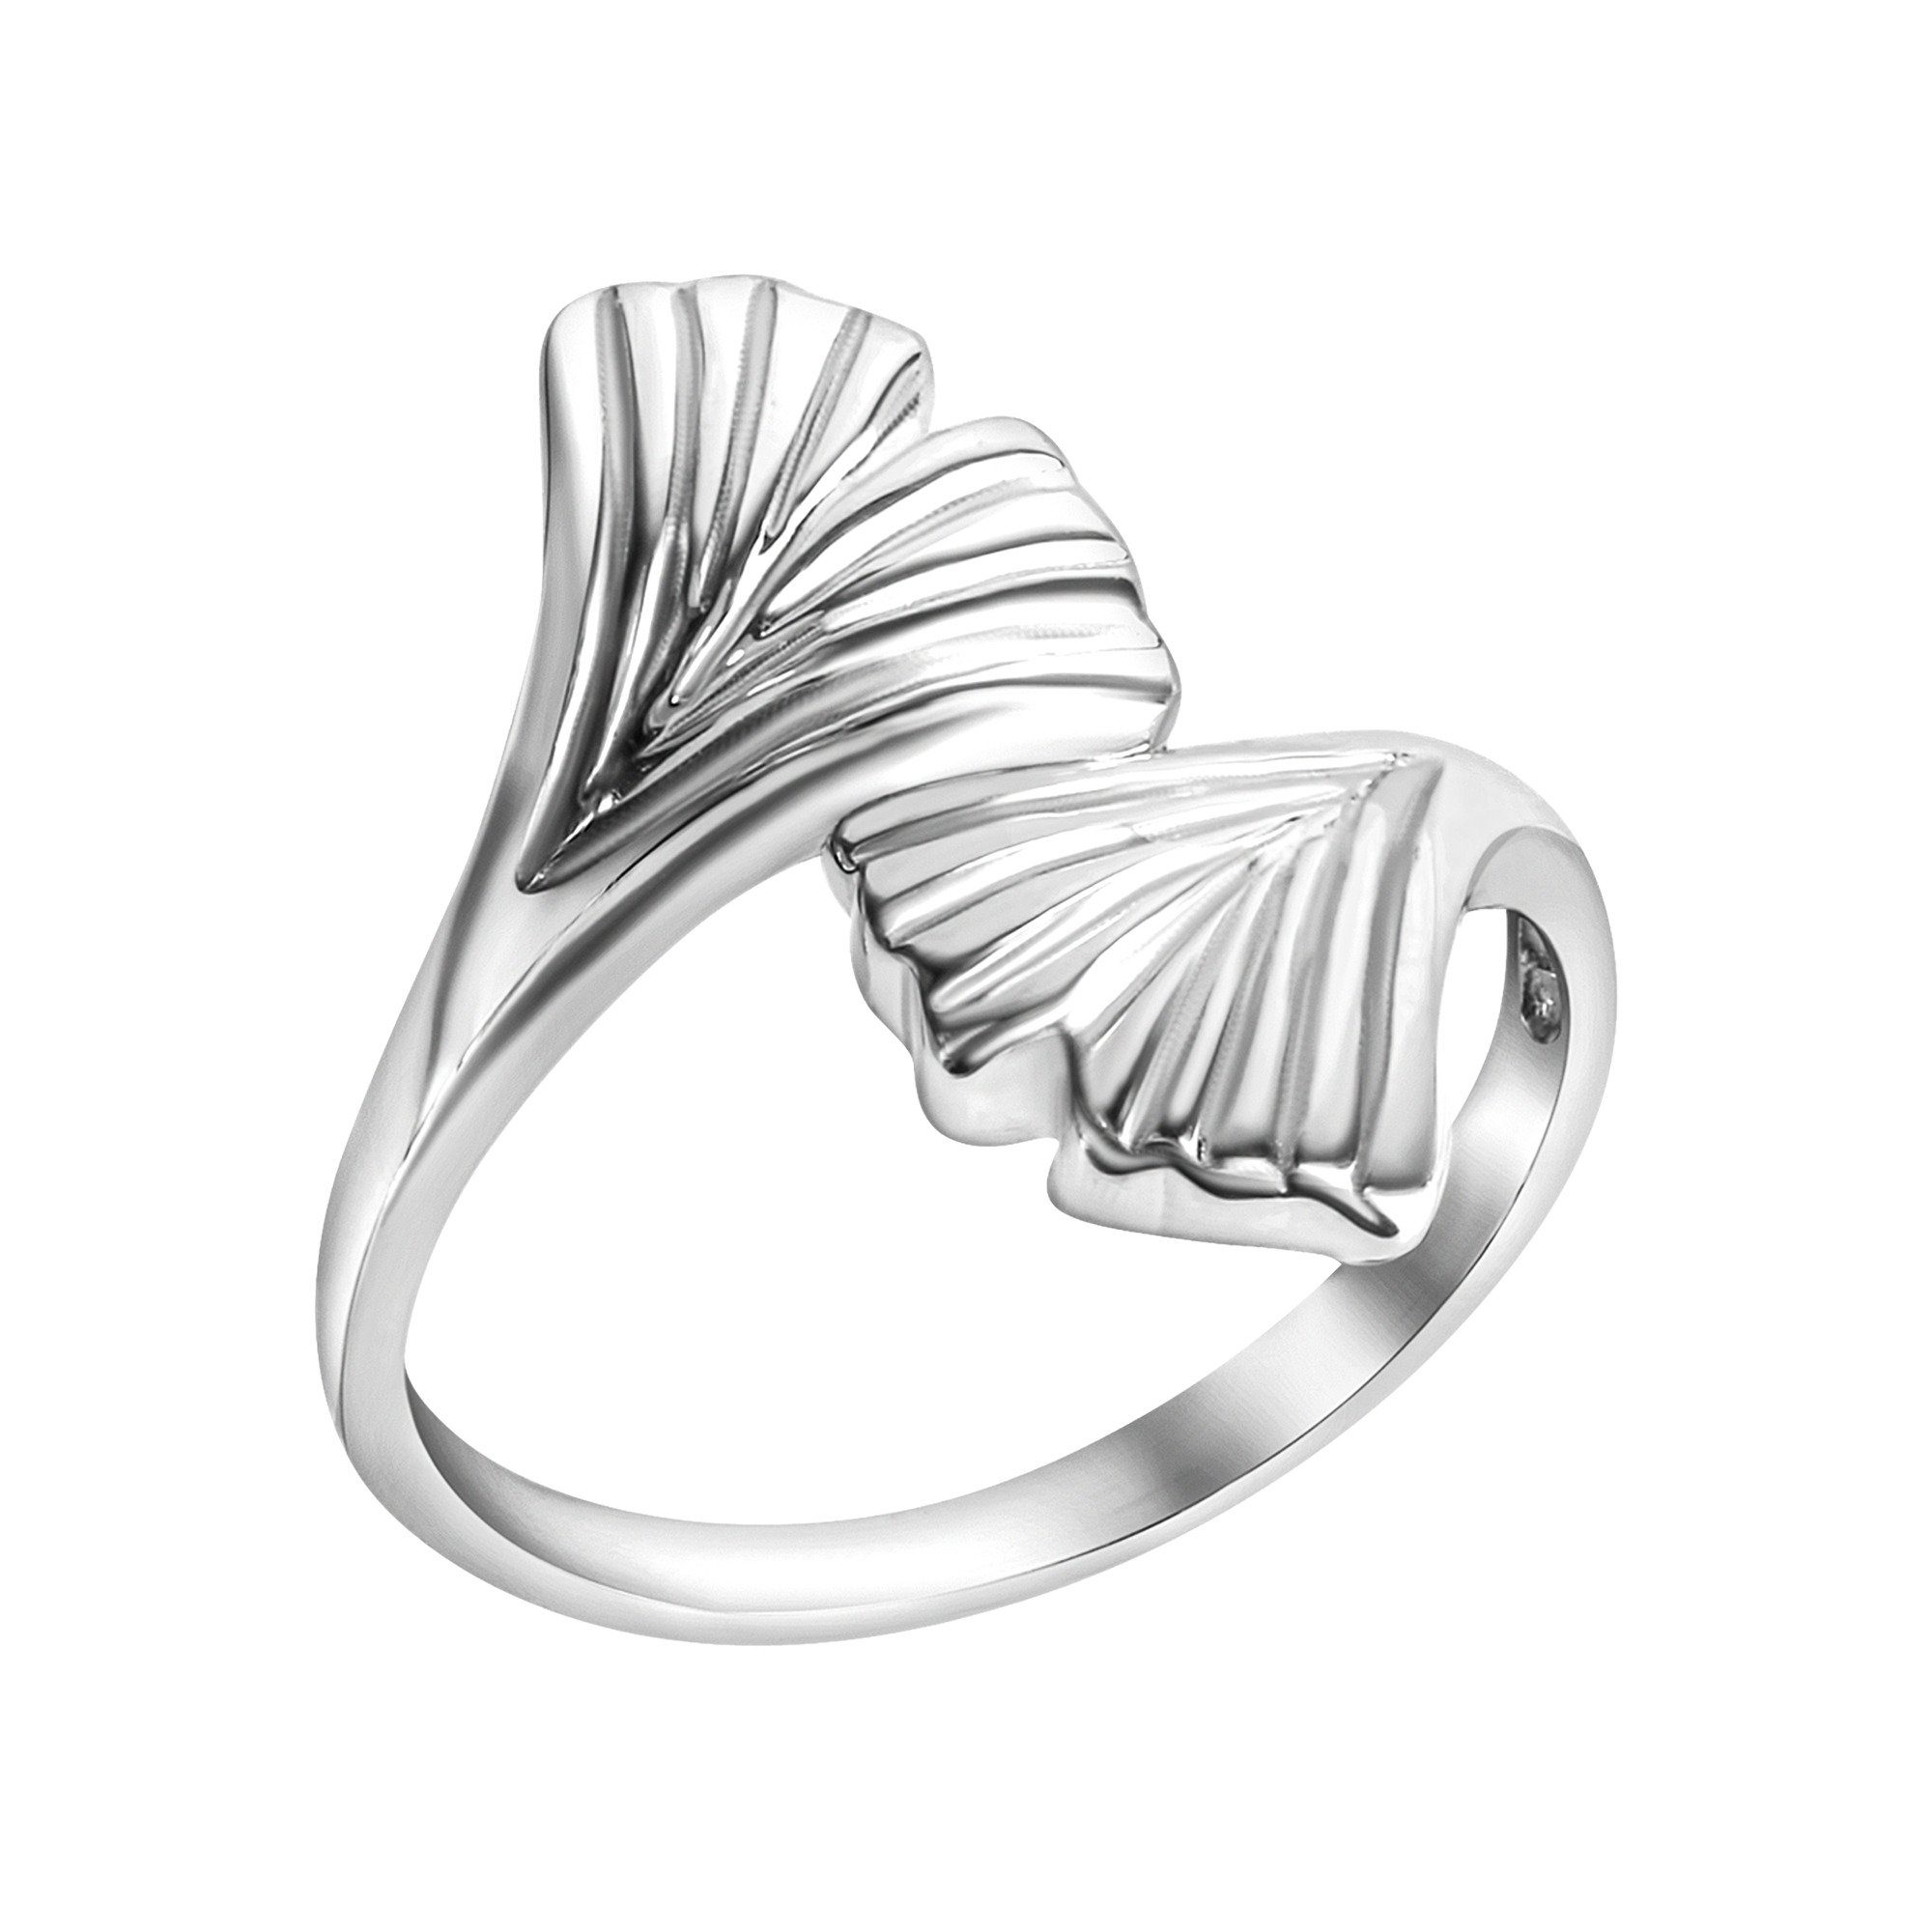 Vivance Fingerring 925-Sterling Silber rhodiniert, Ring 925 Aussergewöhnlicher Silber rhodiniert aus